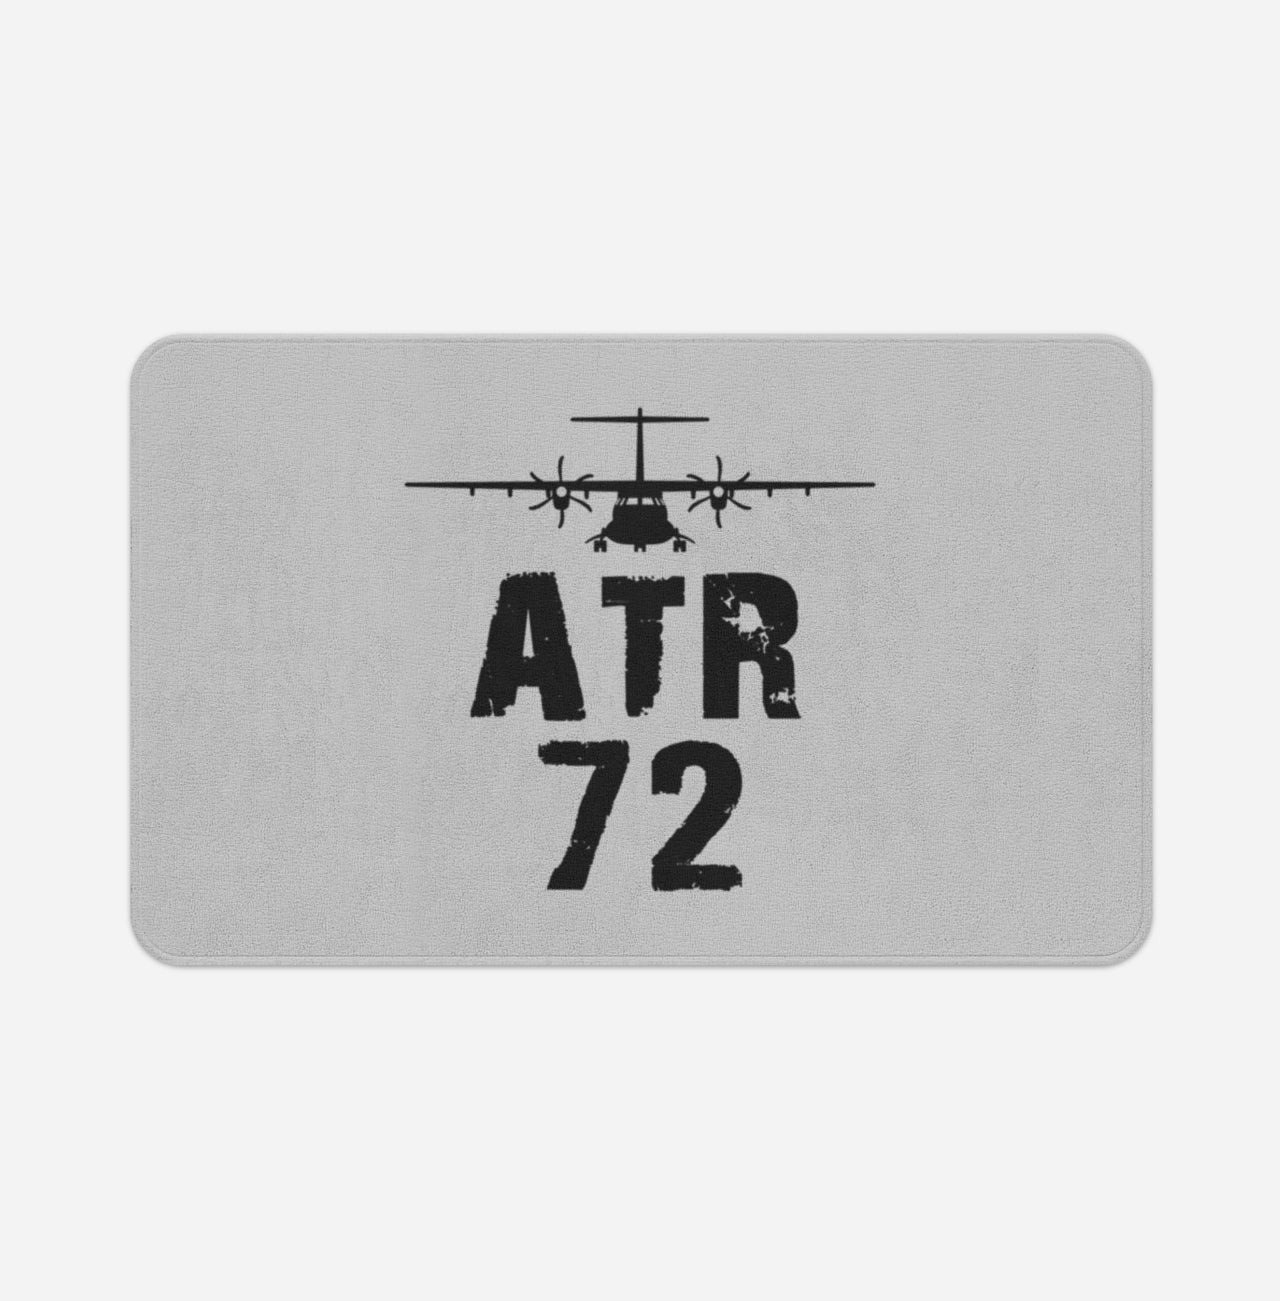 ATR-72 & Plane Designed Bath Mats